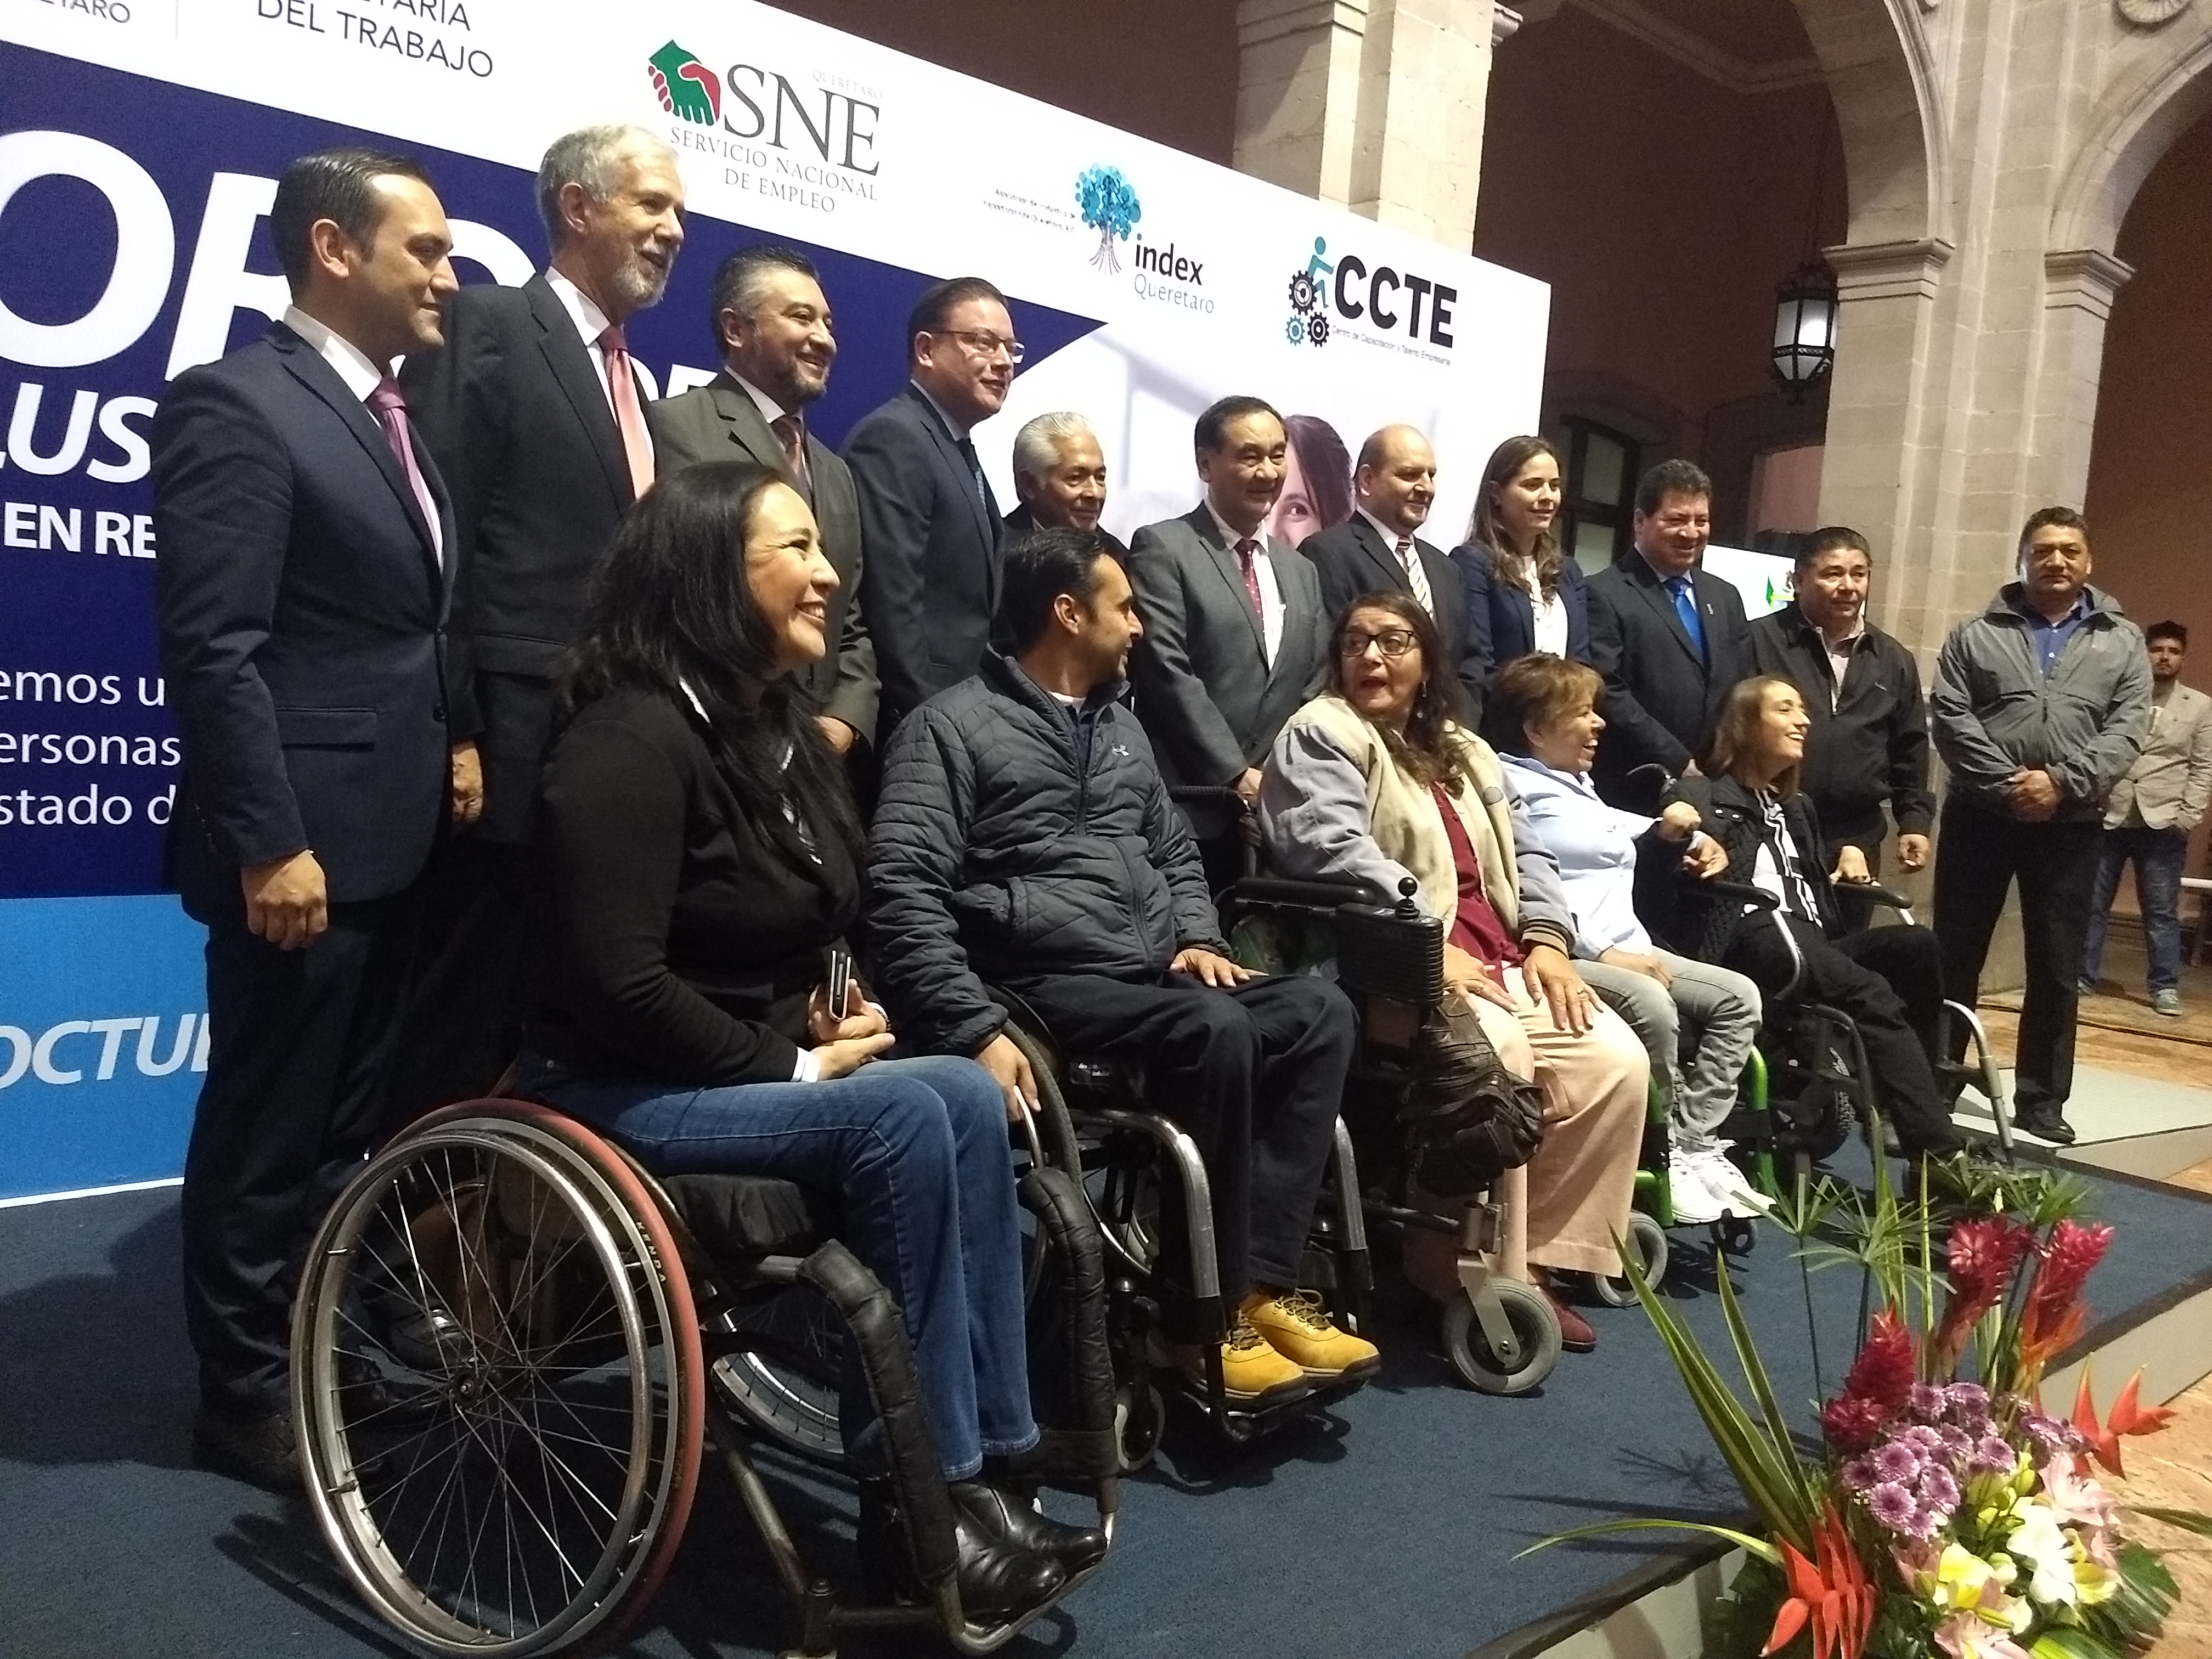  Secretaría de Trabajo de Querétaro suscribe convenio para impulsar inclusión laboral de personas con discapacidad